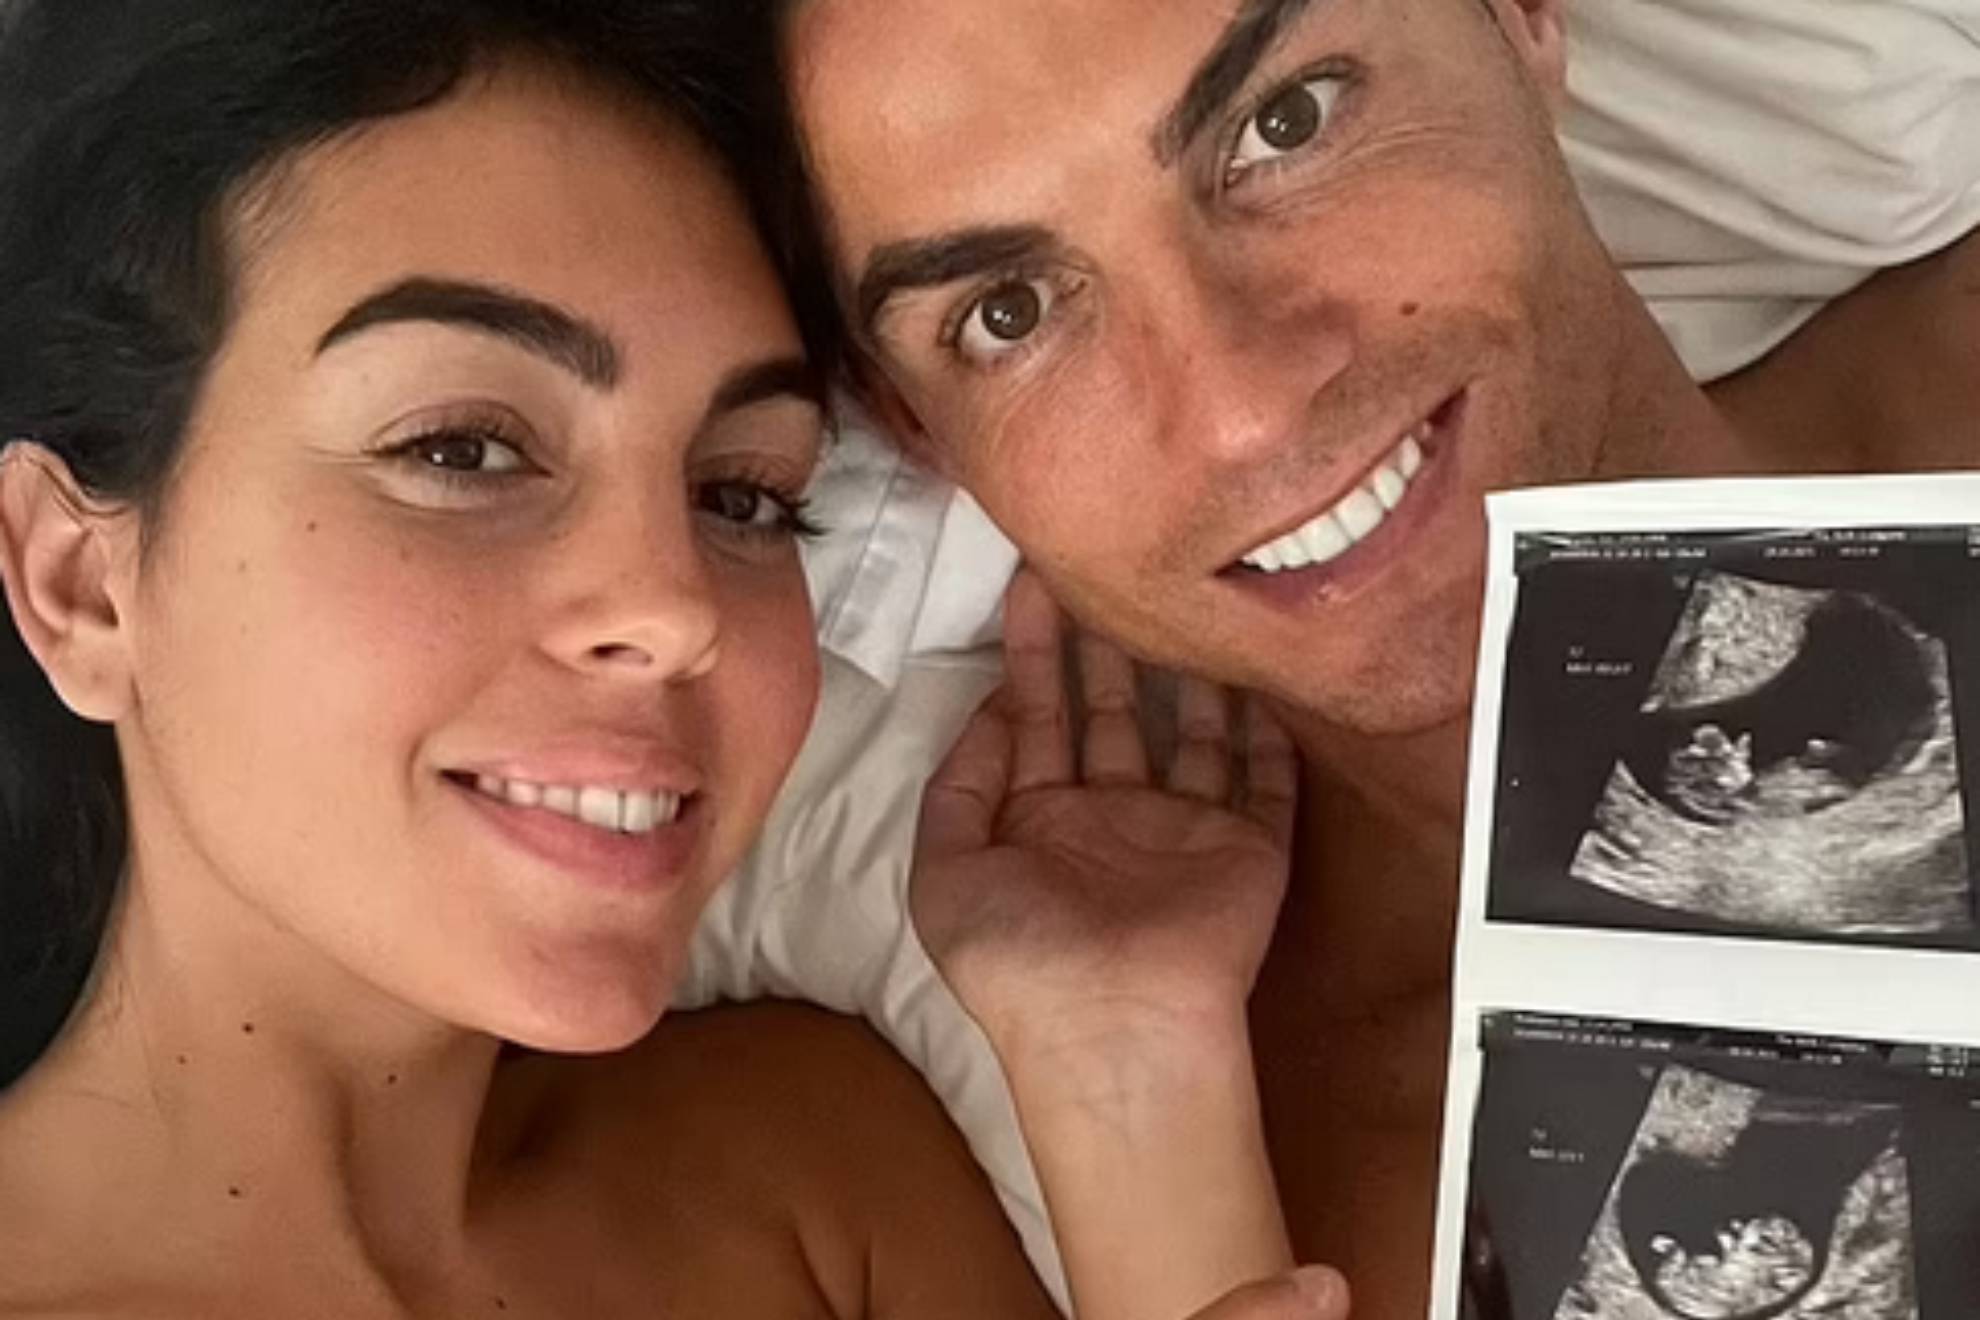 Cristiano Ronaldo: I kept my son's ashes, I talk to him every day